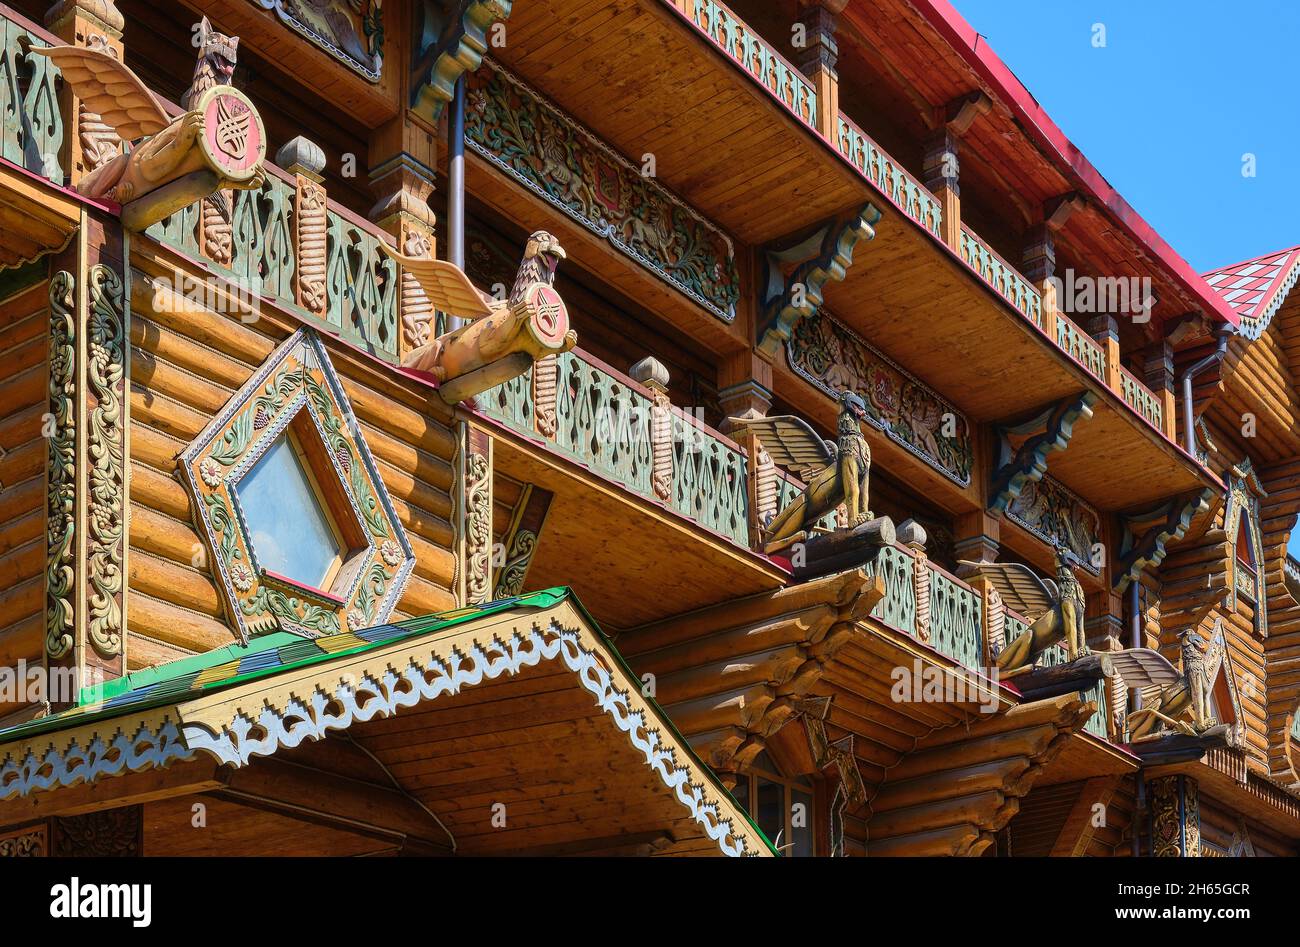 Frammento di un palazzo in legno del refettorio russo nel Cremlino di Izmailovsky nello stile dell'architettura del XVII secolo: Mosca, Russia - Agosto 15, Foto Stock